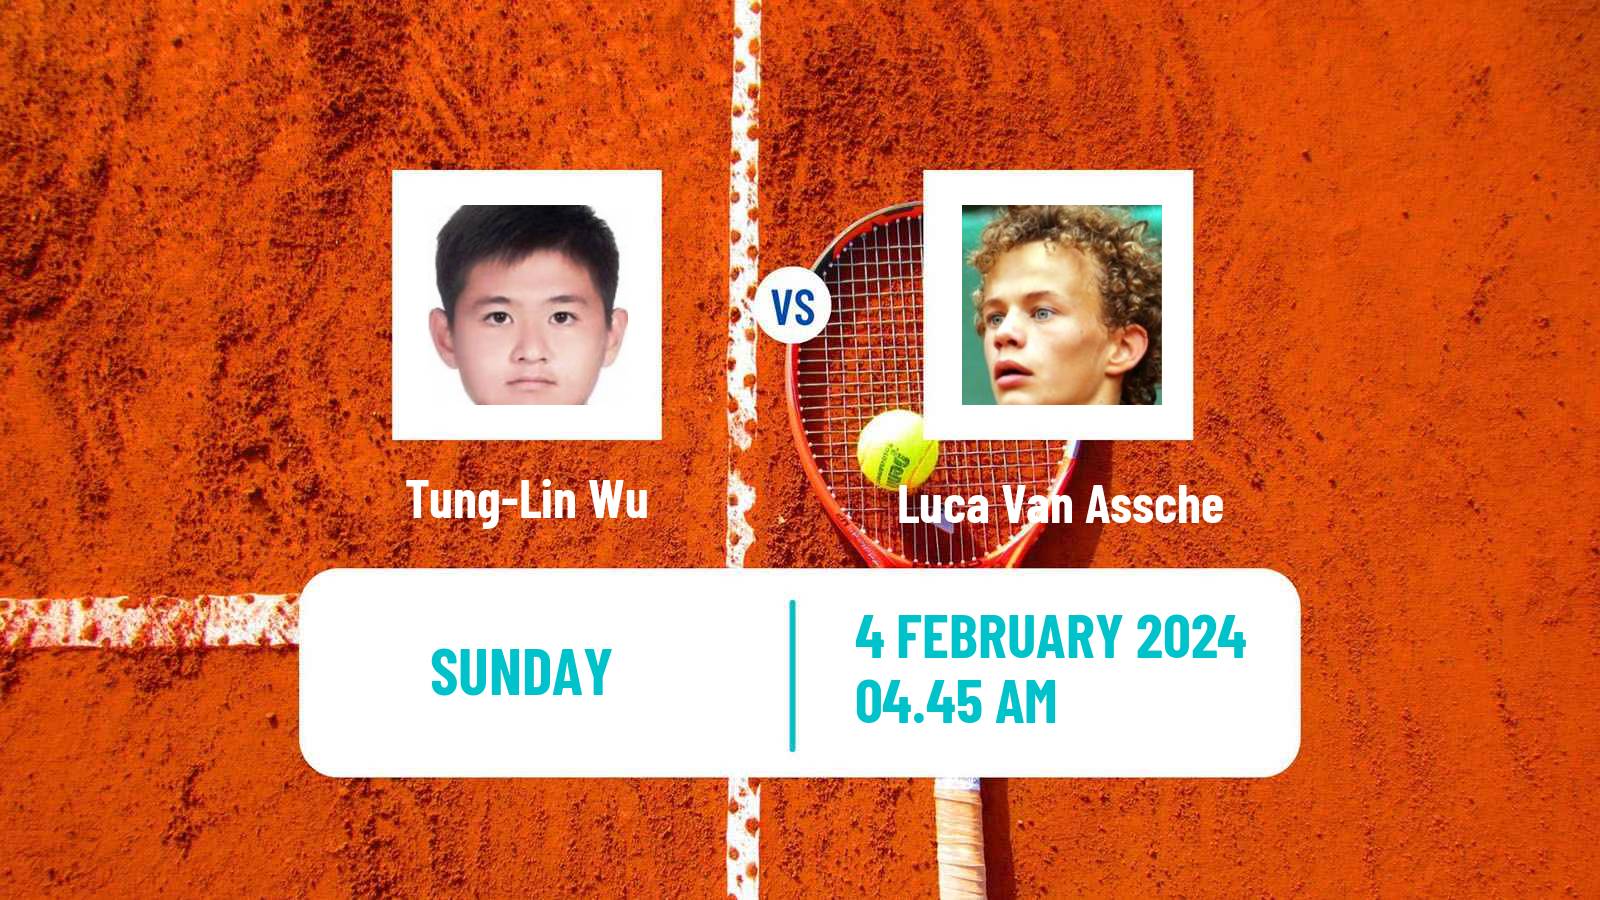 Tennis Davis Cup World Group Tung-Lin Wu - Luca Van Assche